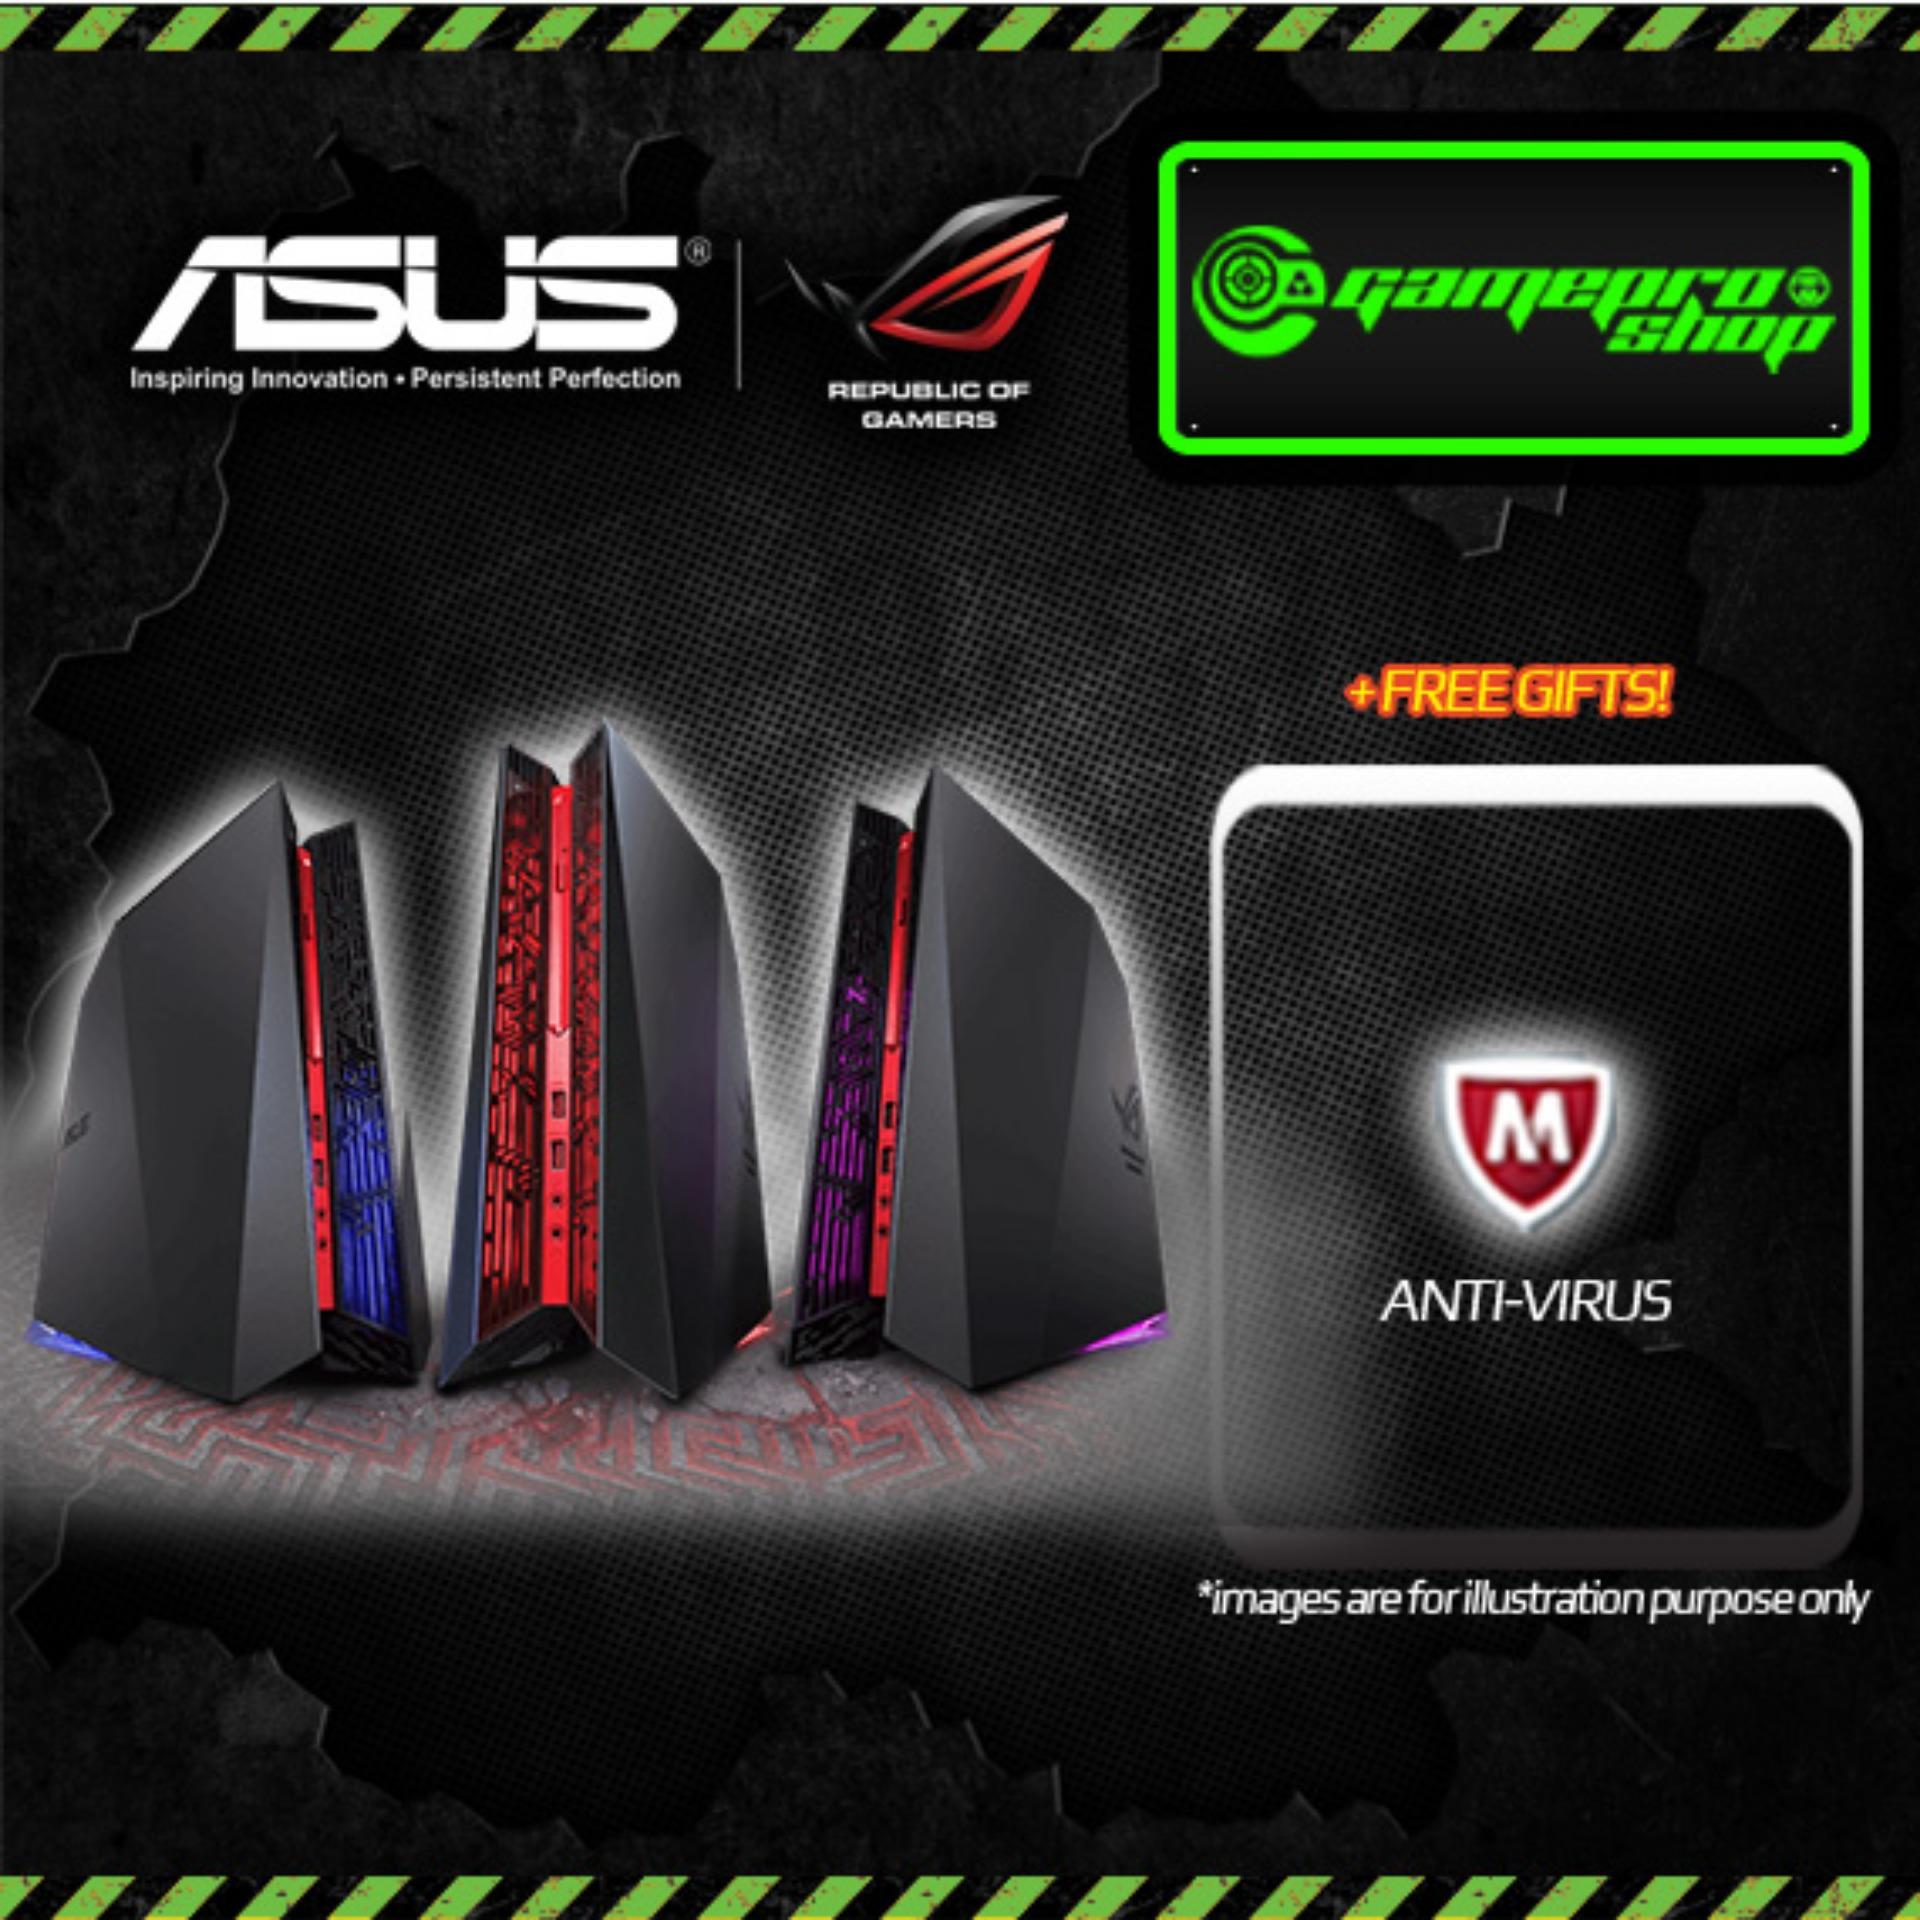 ASUS ROG G20CI - SG007T i7-7700 GTX 1080 8GB DDR5 32GB RAM Gaming Desktop *COMEX PROMO*